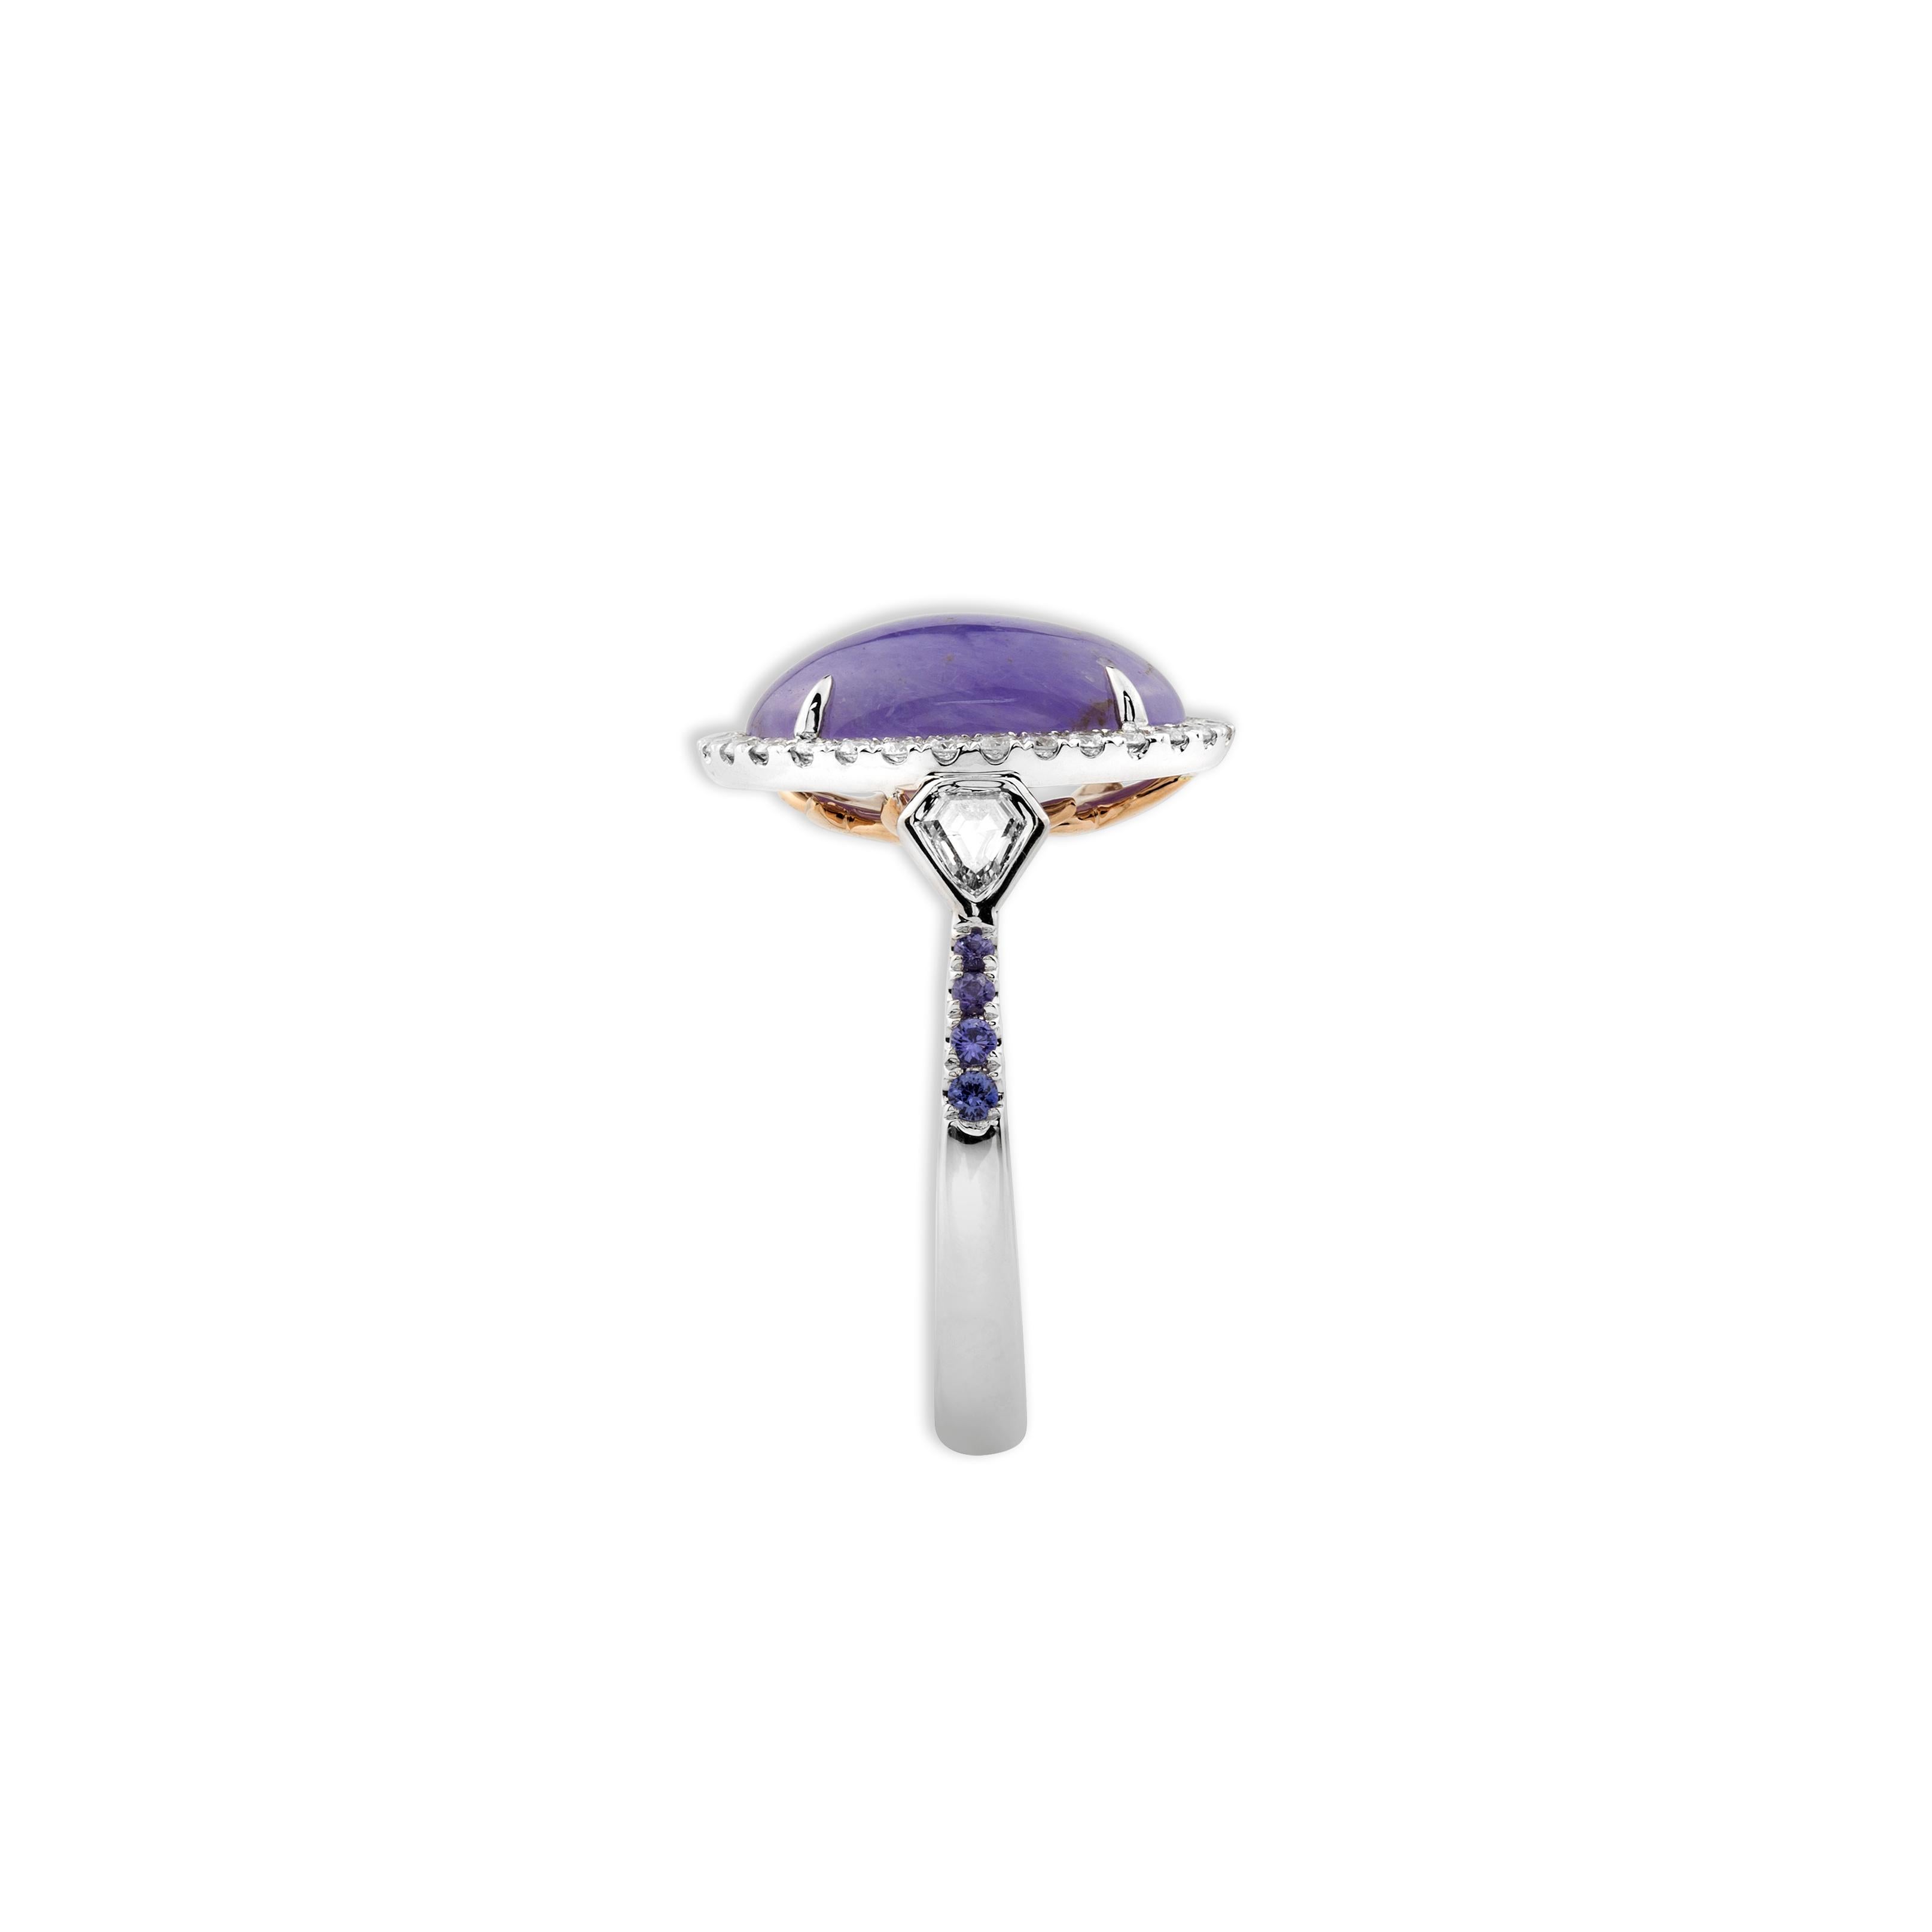 Weiße Diamanten (Rund- und Drachenschliff) 0,60 ct, violette Saphire 0,11 ct, ovale Lavendel-Jade 10,18 ct 